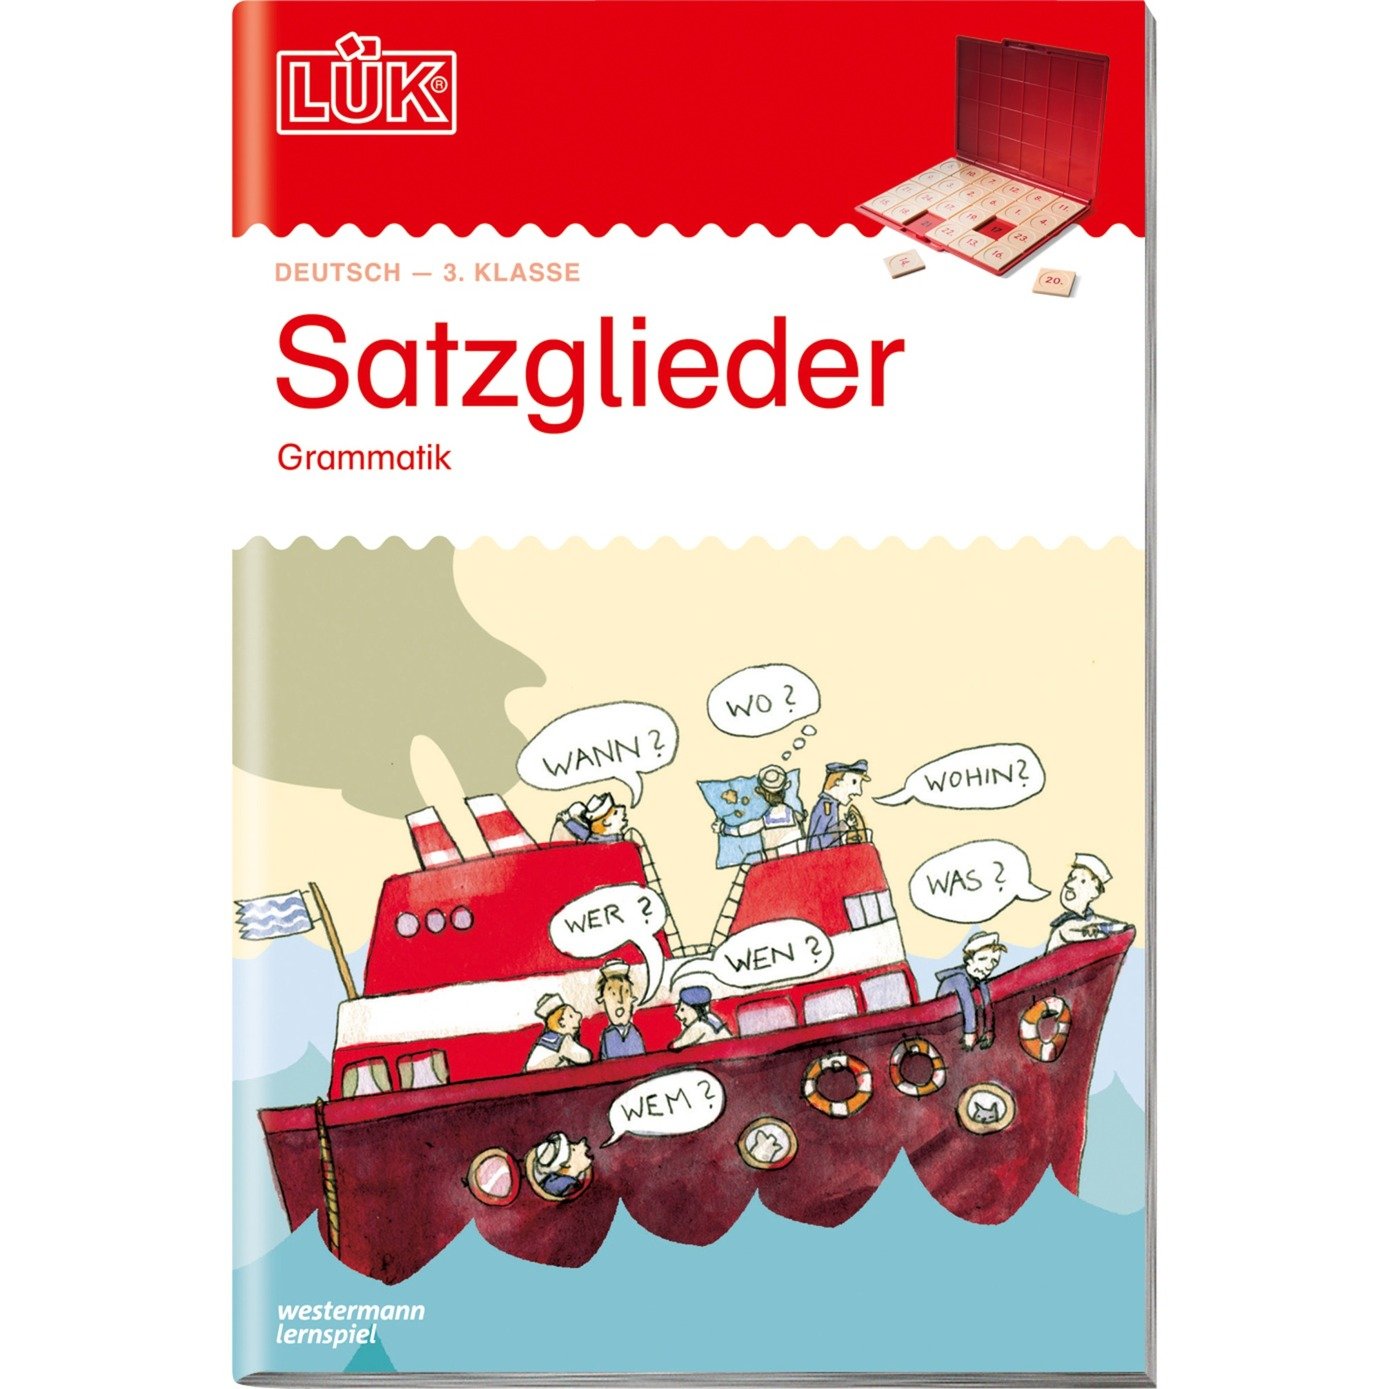 Satzglieder książka dla dzieci, Książki edukacyjne